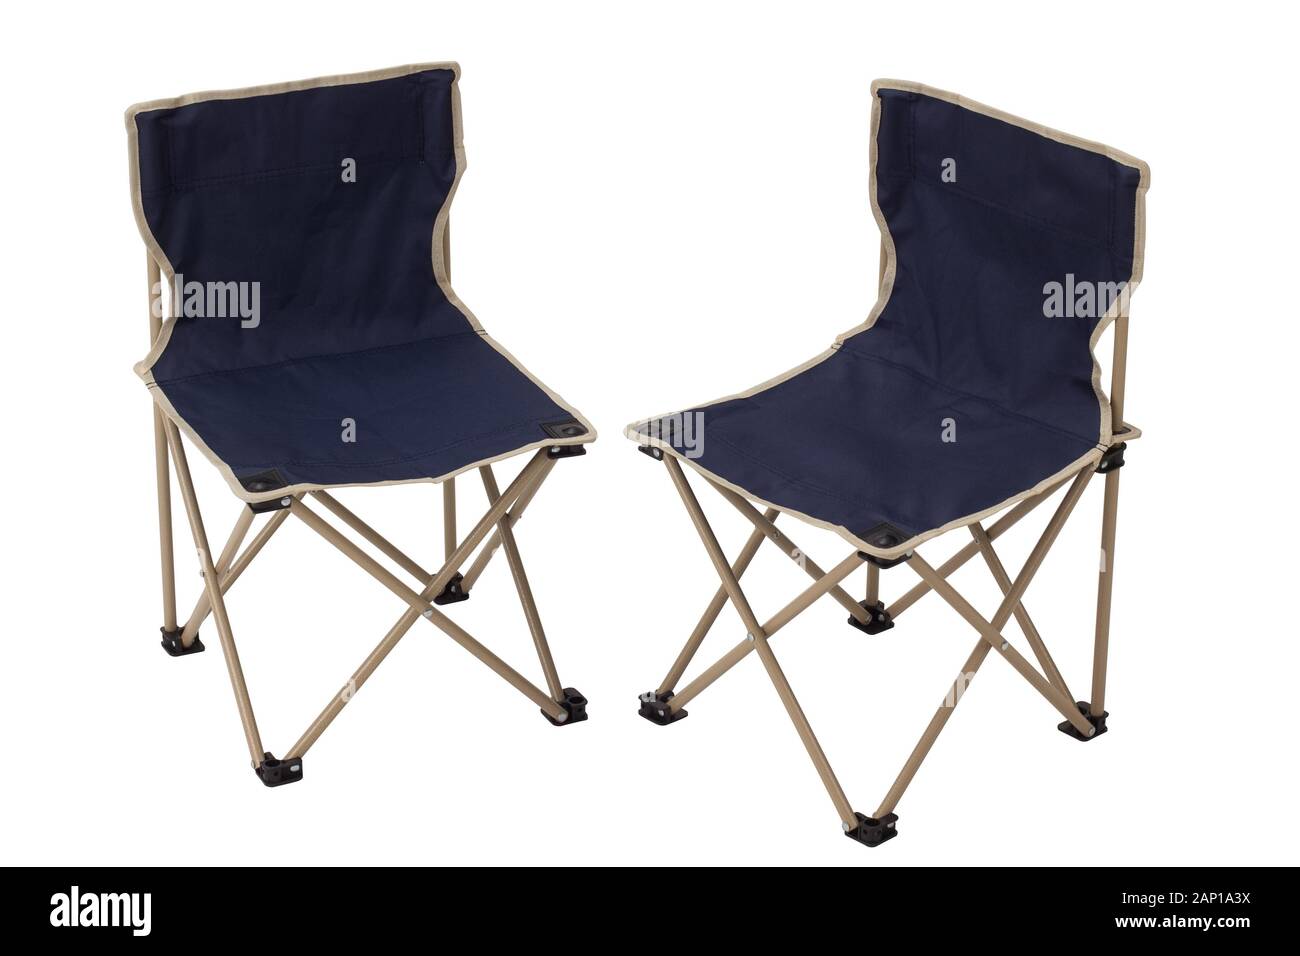 Chaises de camping pliante toile isolé sur fond blanc Banque D'Images